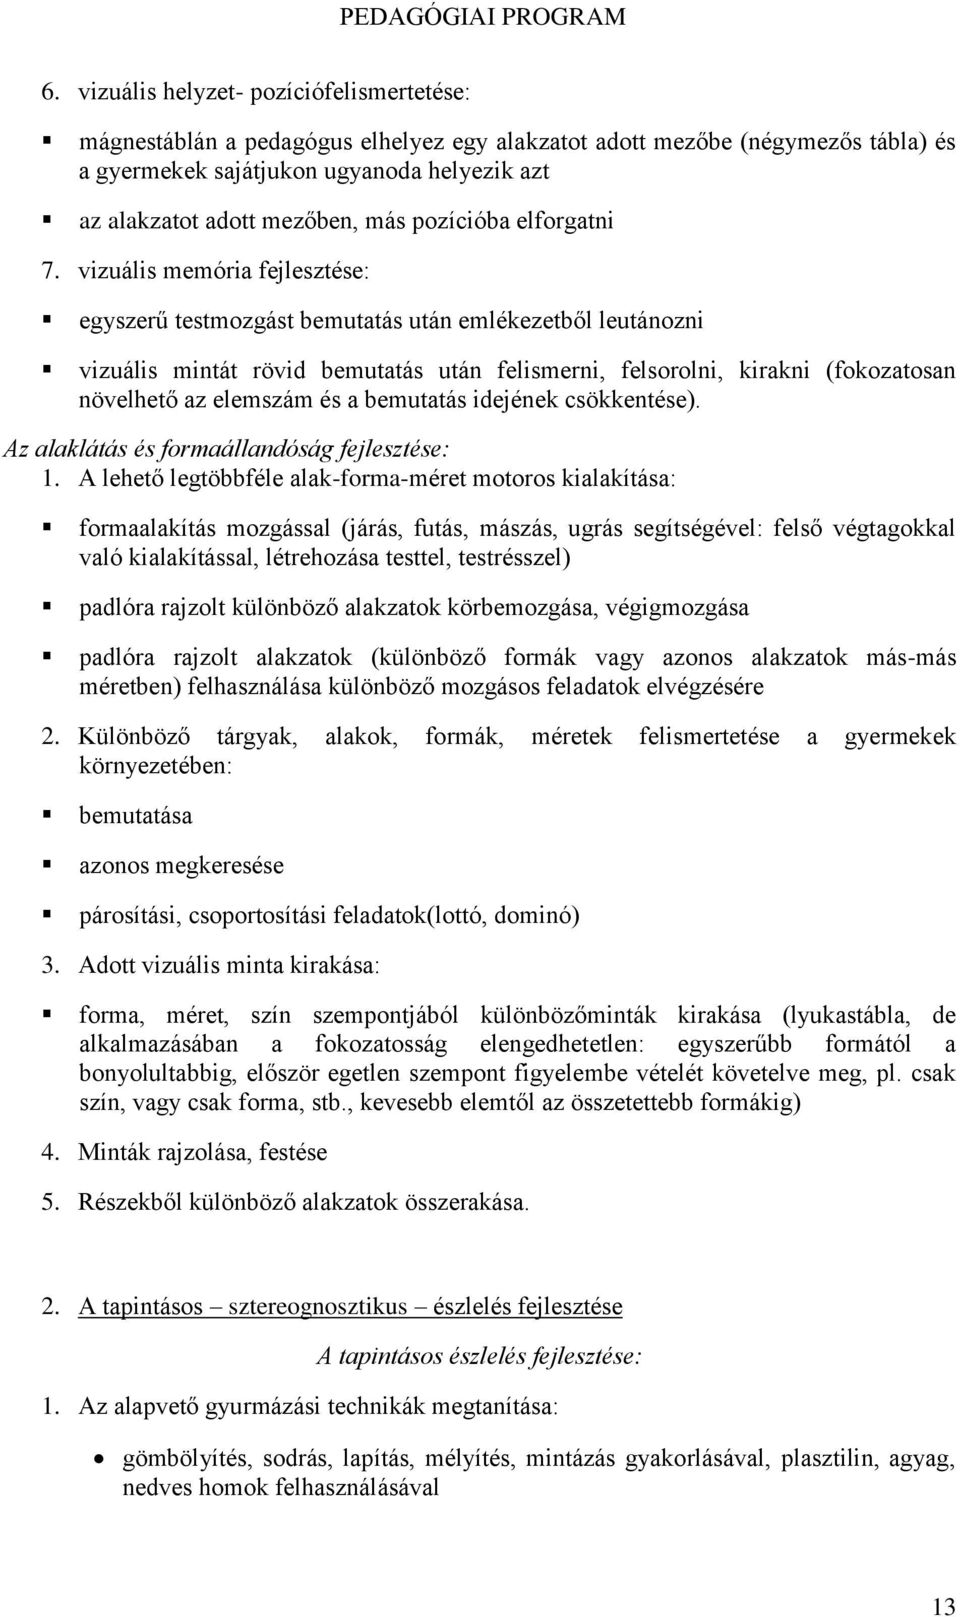 Rózsakert Tagóvoda Pedagógiai Programja - PDF Ingyenes letöltés